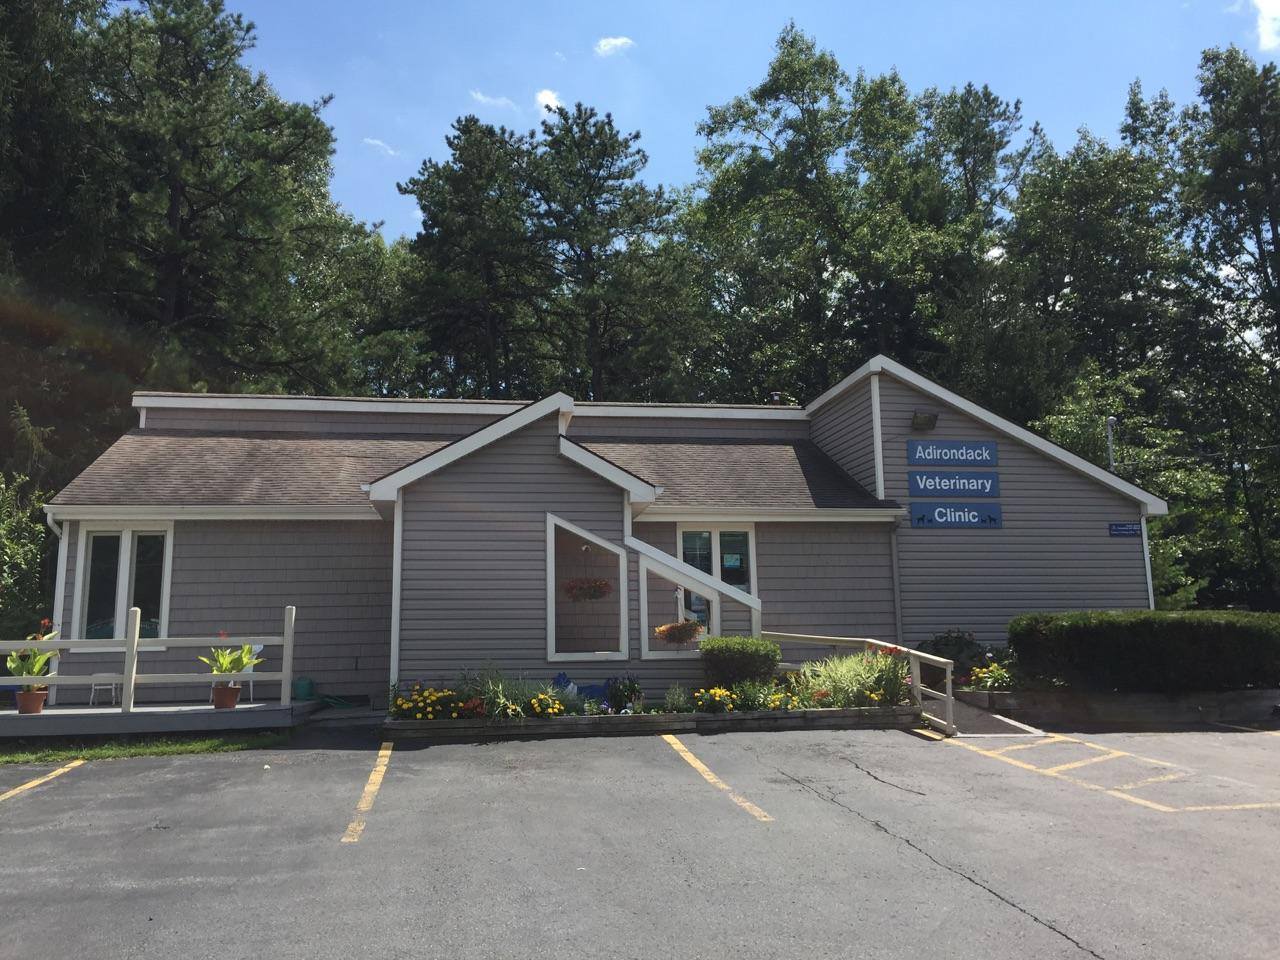 Adirondack Veterinary Clinic